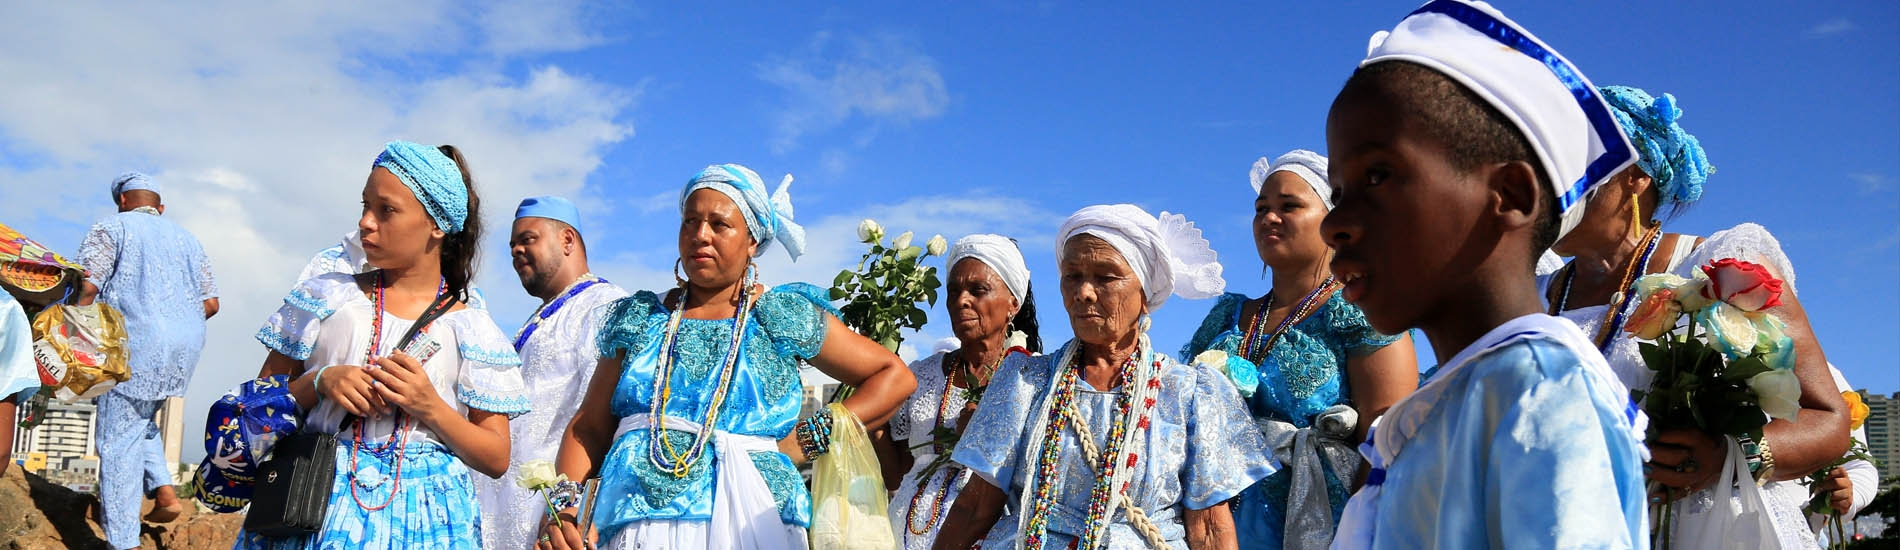 Traditional people custom Salvador Bahia Brazil